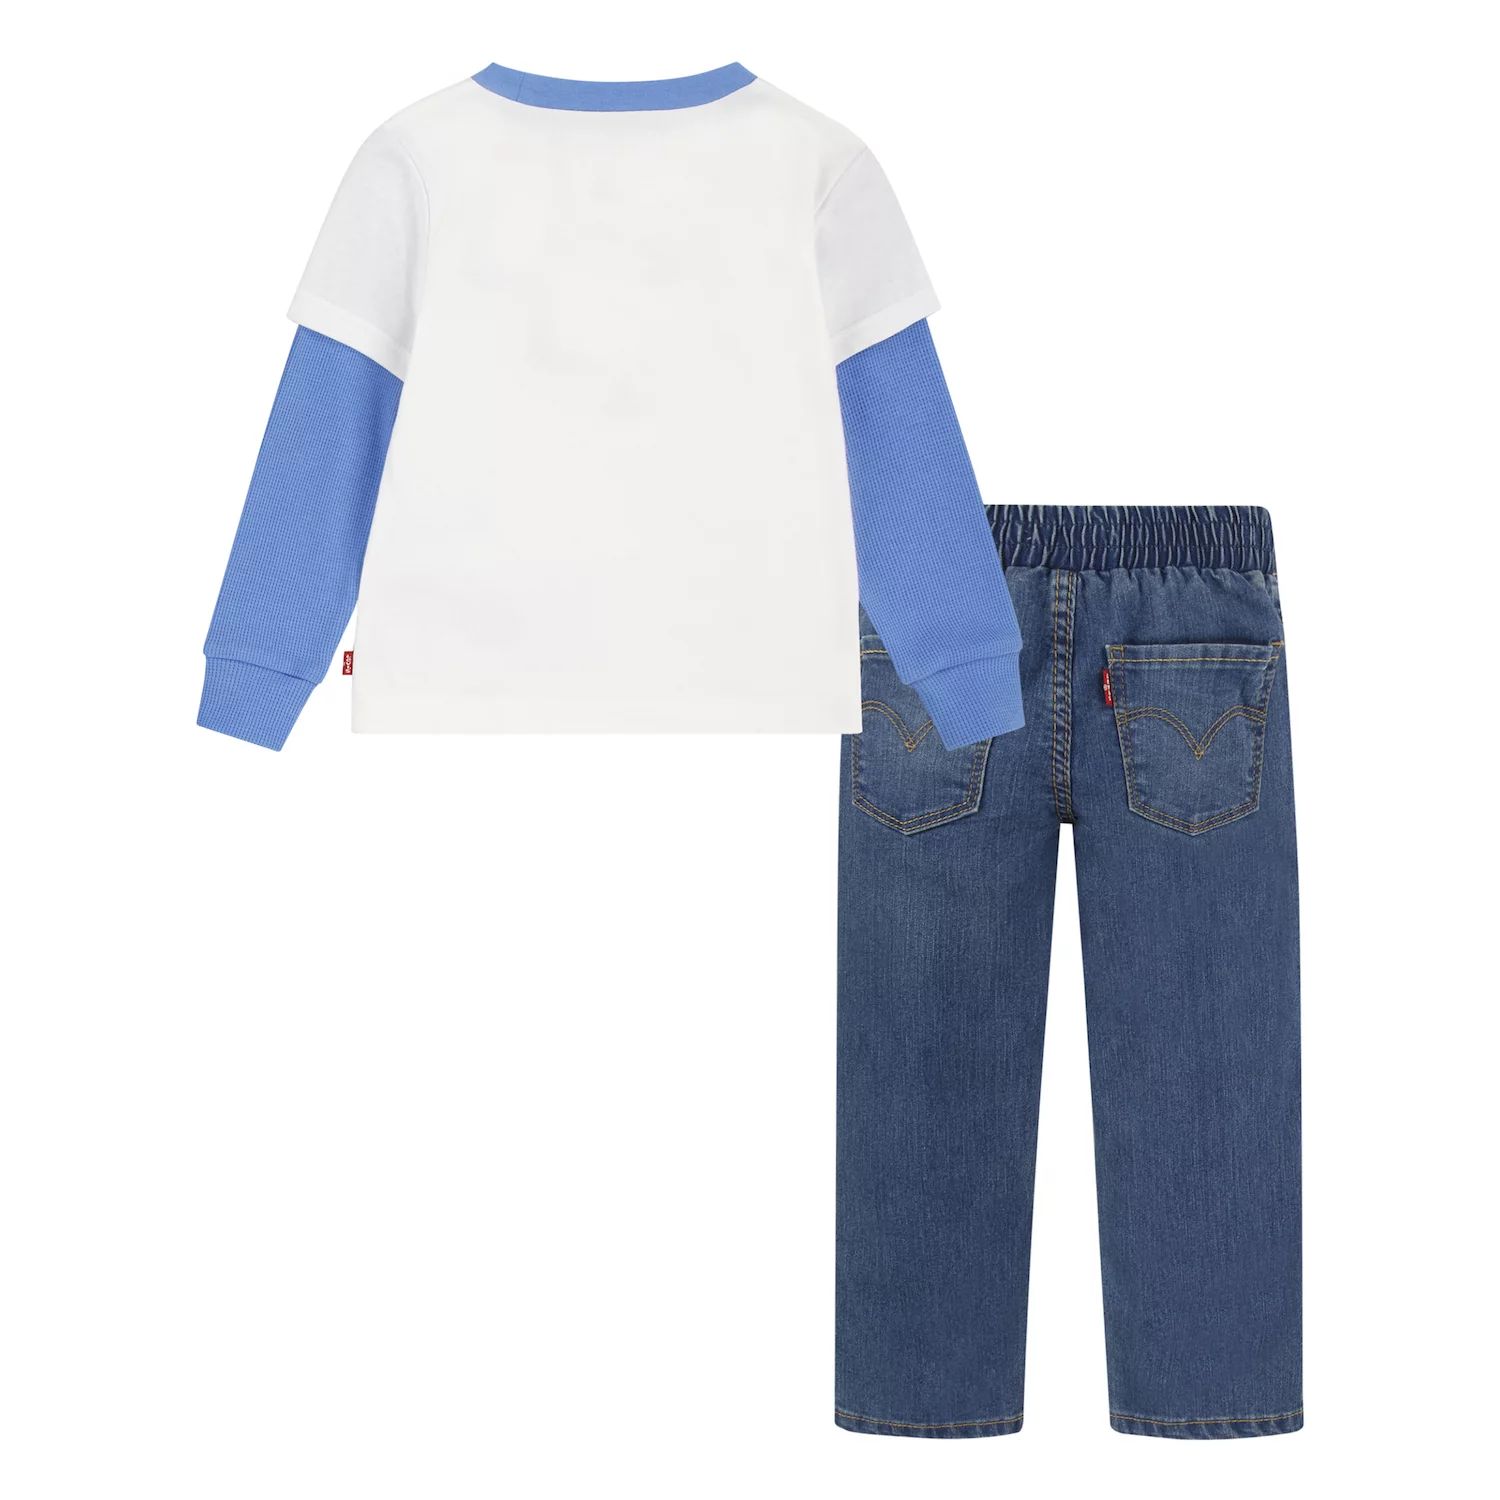 Комплект из футболки с фигурным вырезом и джинсовых джинсов Levi's S'More Friends для маленьких мальчиков Levi's